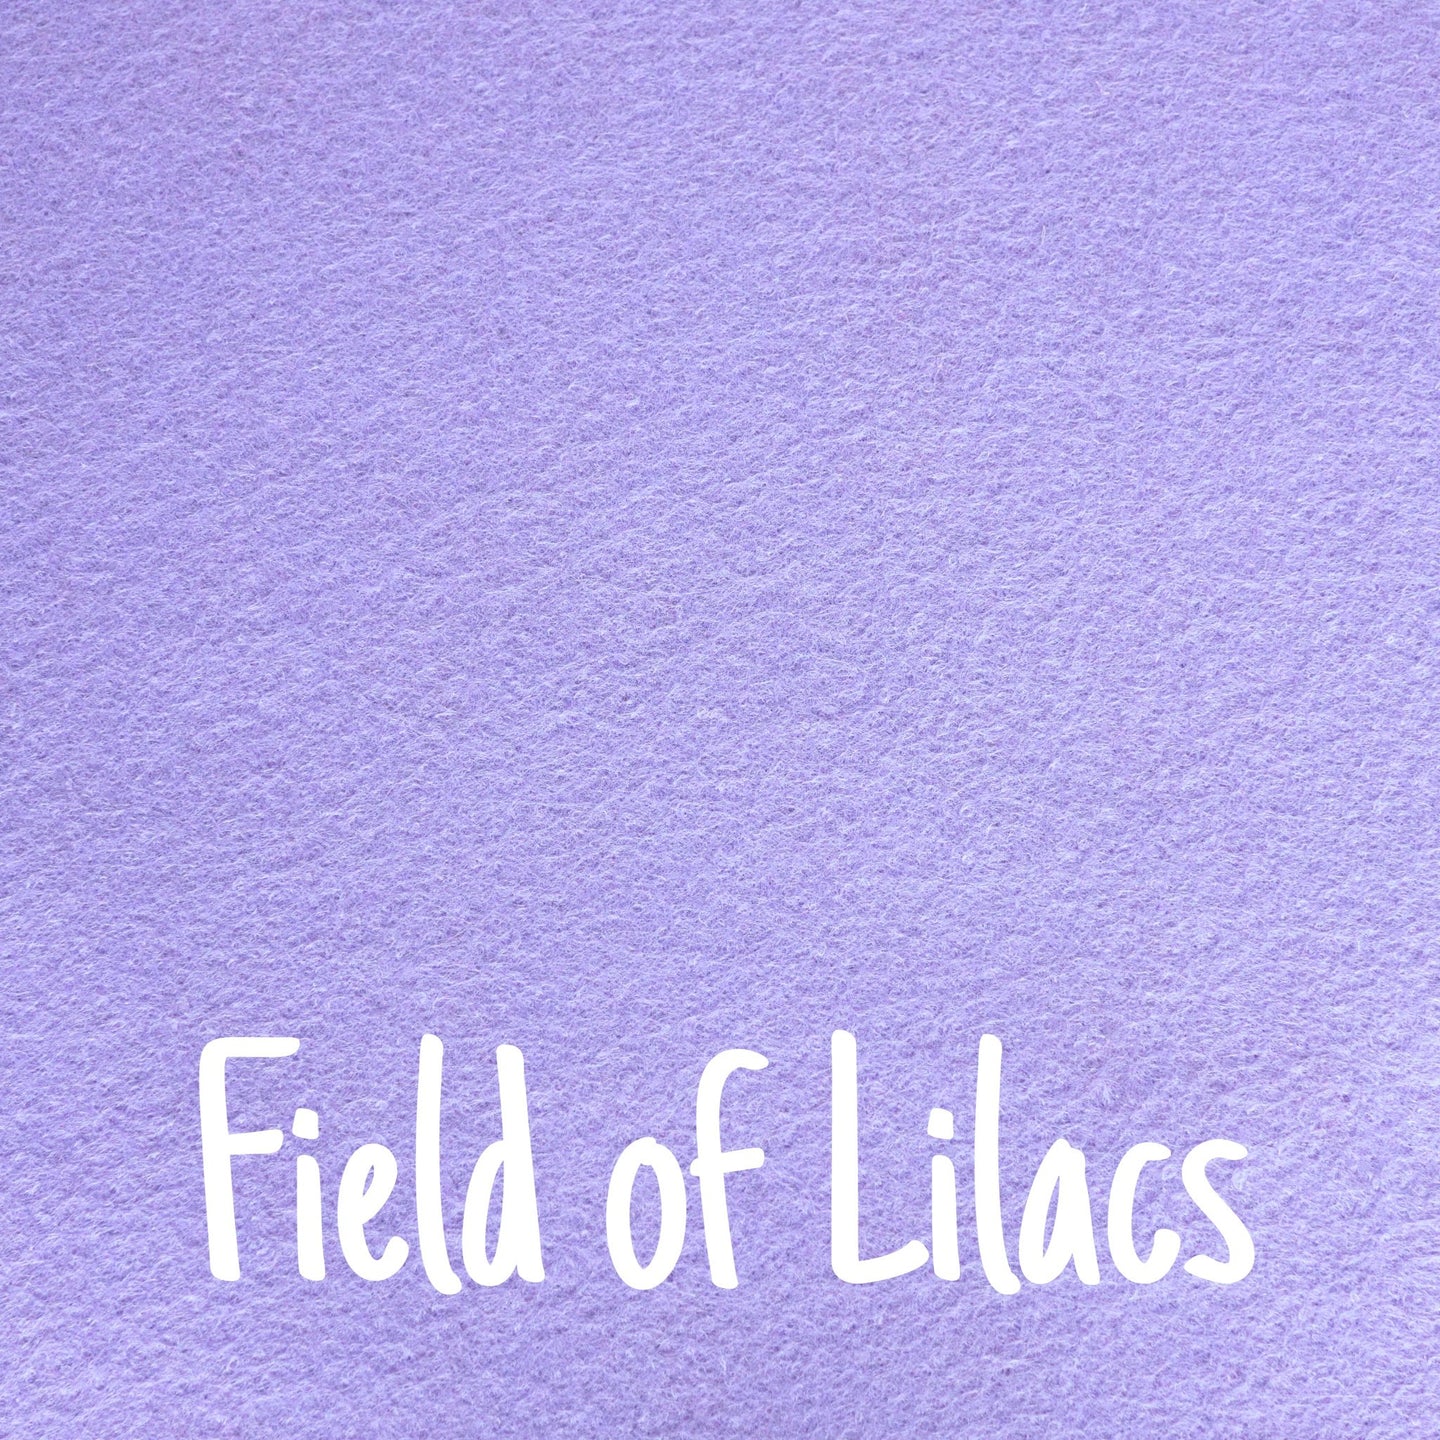 Field of Lilacs Wool Blend Felt